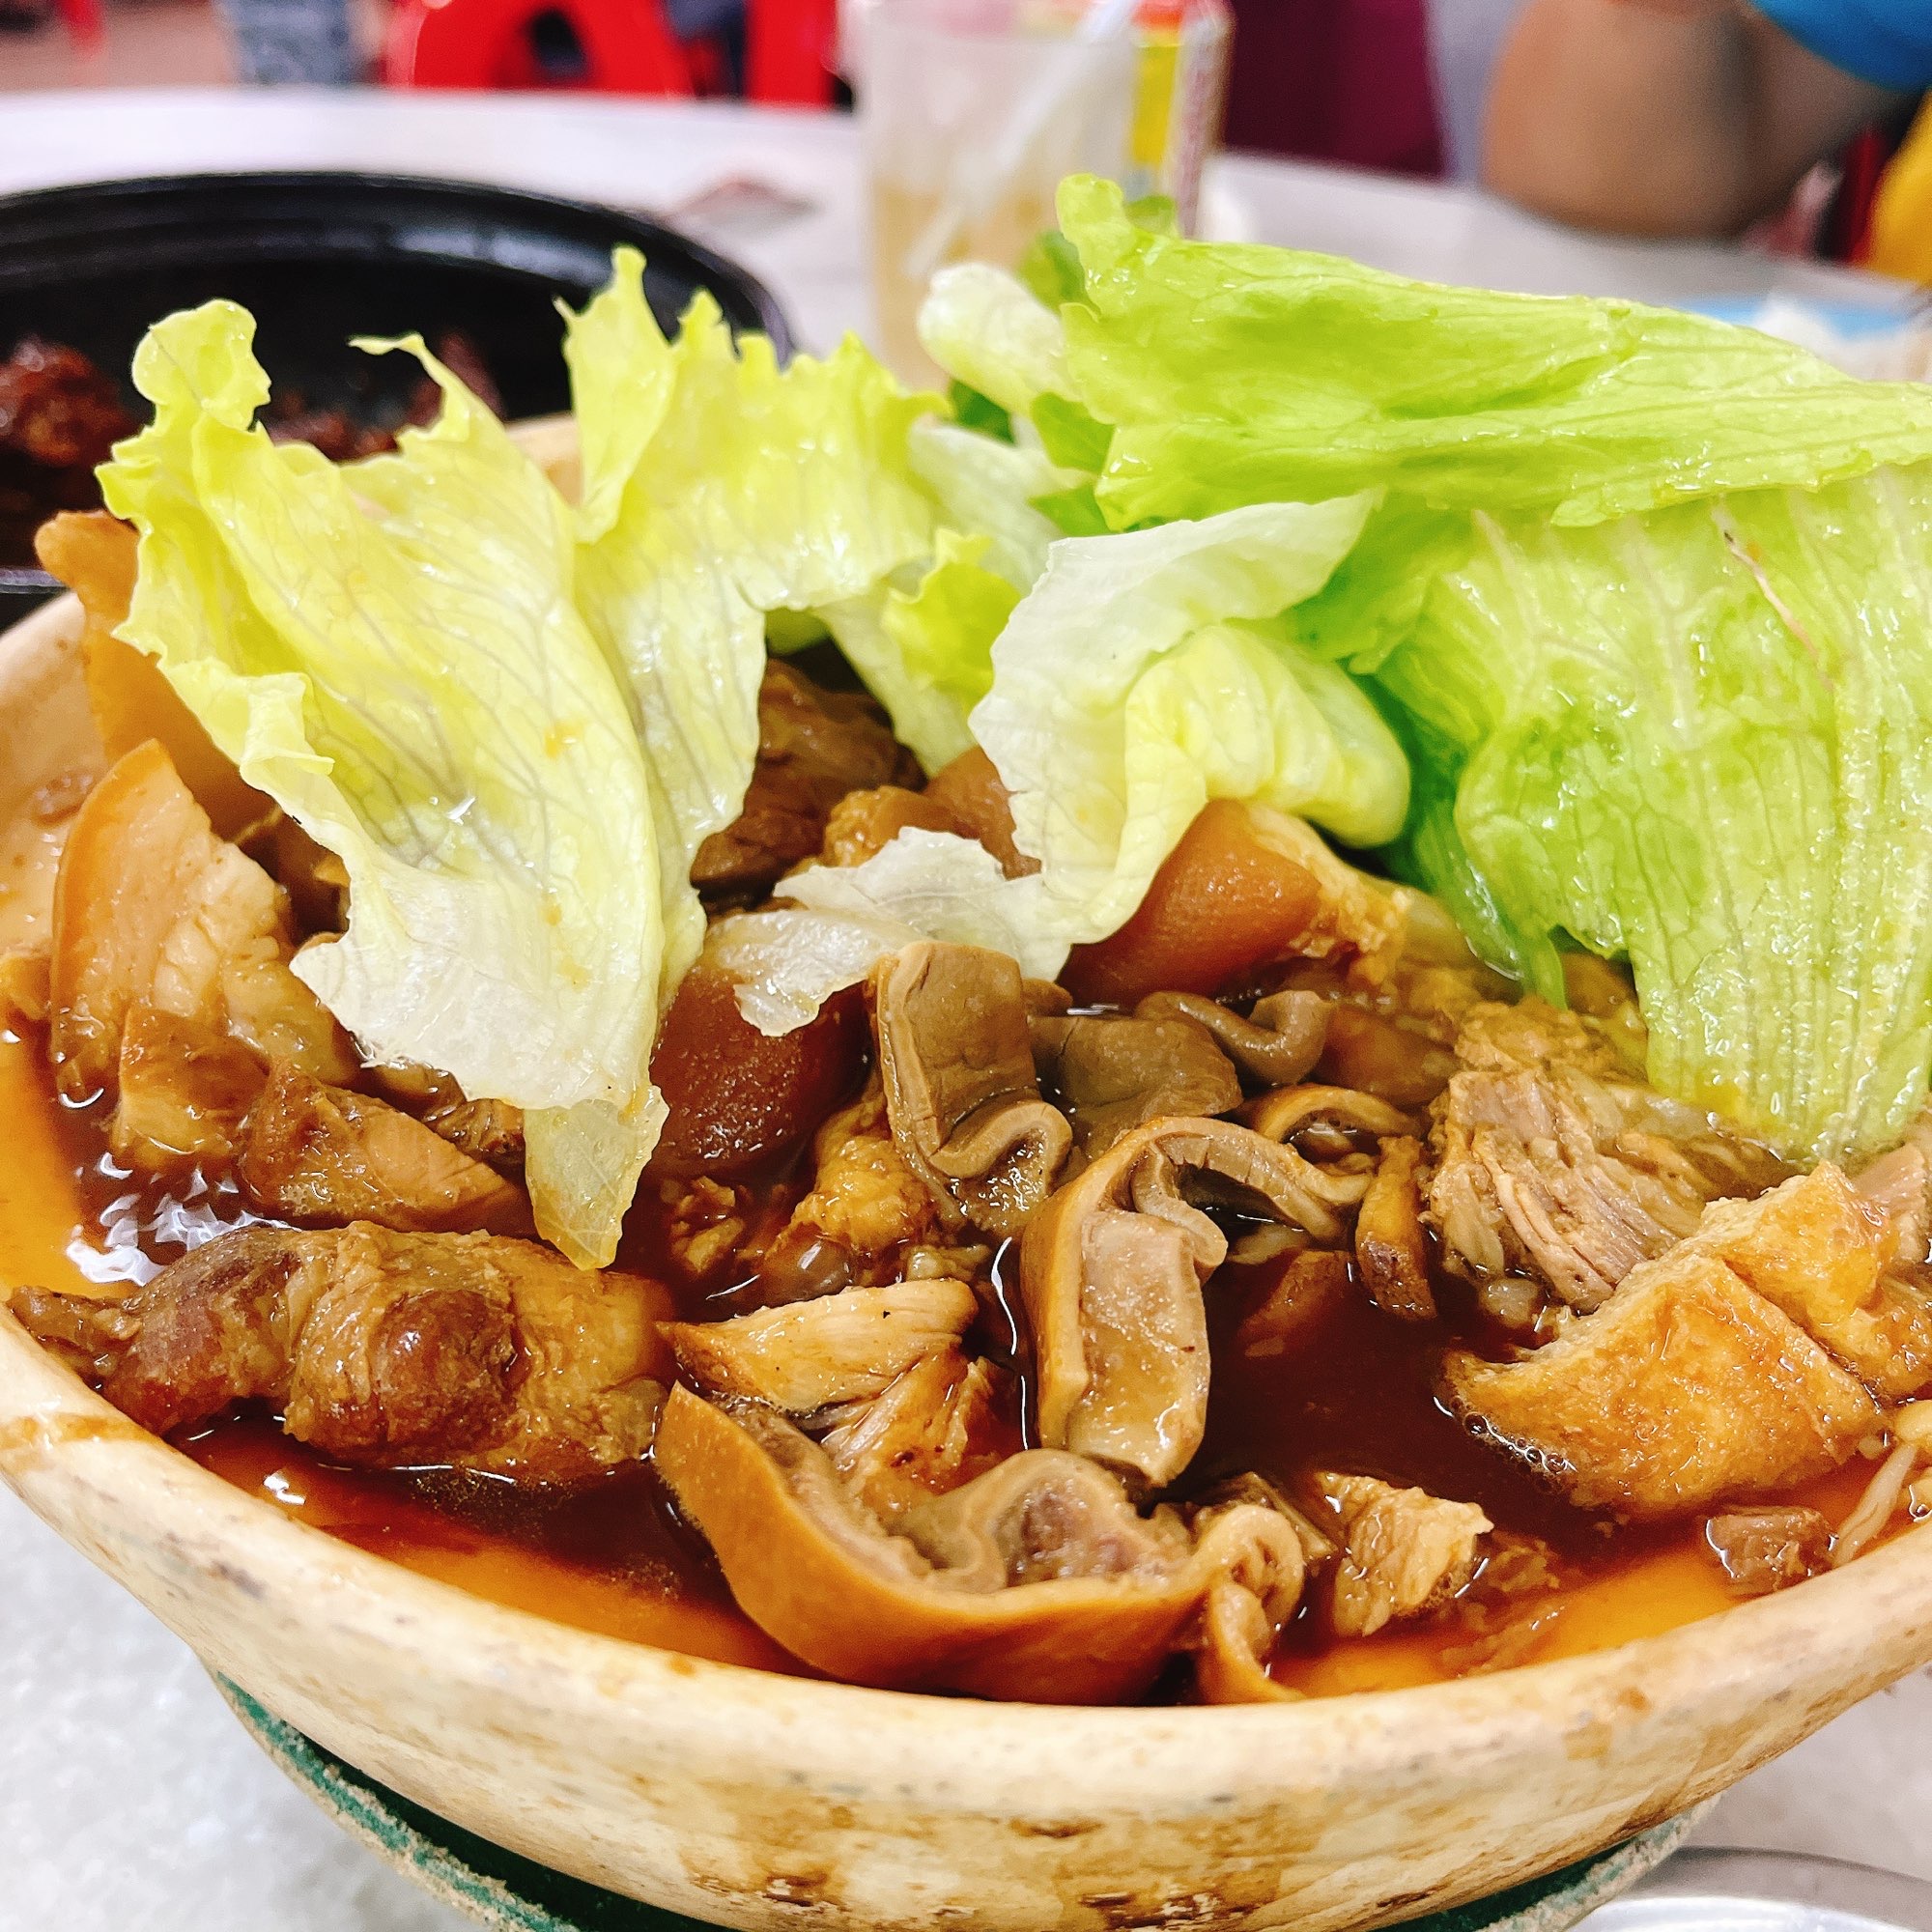 来马来西亚一定要去吃的就是这道肉骨茶了。以前是只有干锅样子的，随着发展就出现了汤锅的肉骨茶。 是各有